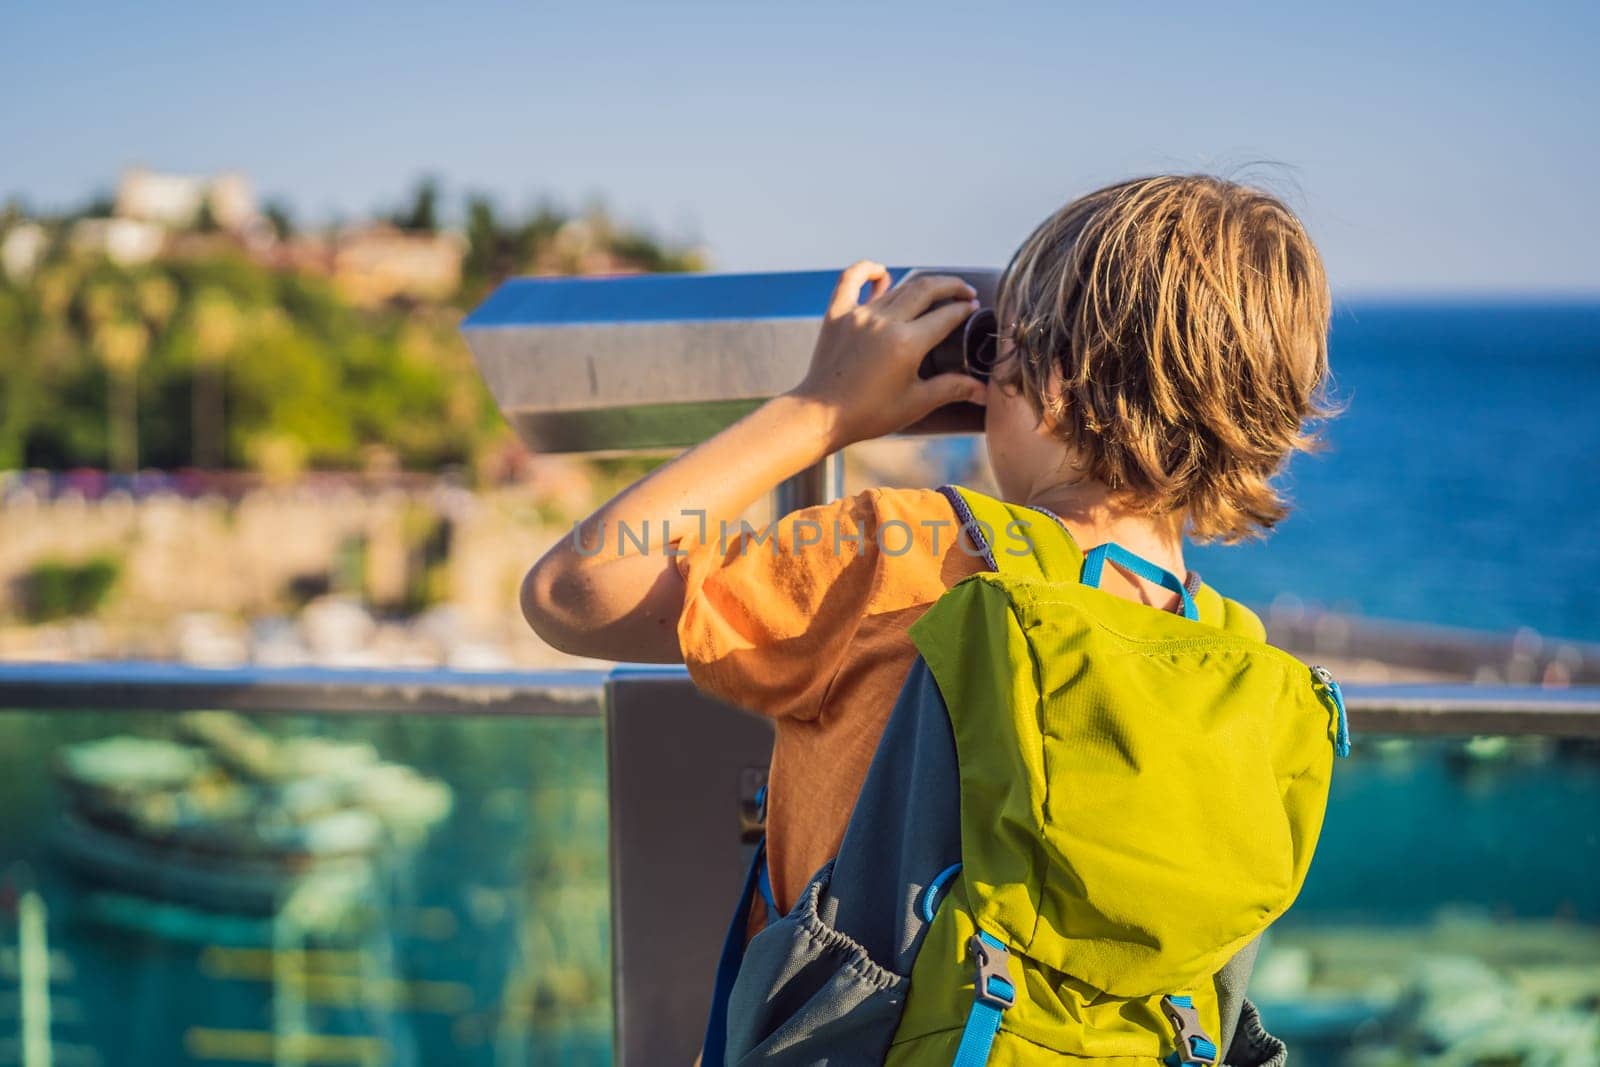 Boy tourist looks through binoculars in Old town Kaleici in Antalya. Turkiye. Panoramic view of Antalya Old Town port, Taurus mountains and Mediterrranean Sea, Turkey. Traveling with kids concept by galitskaya